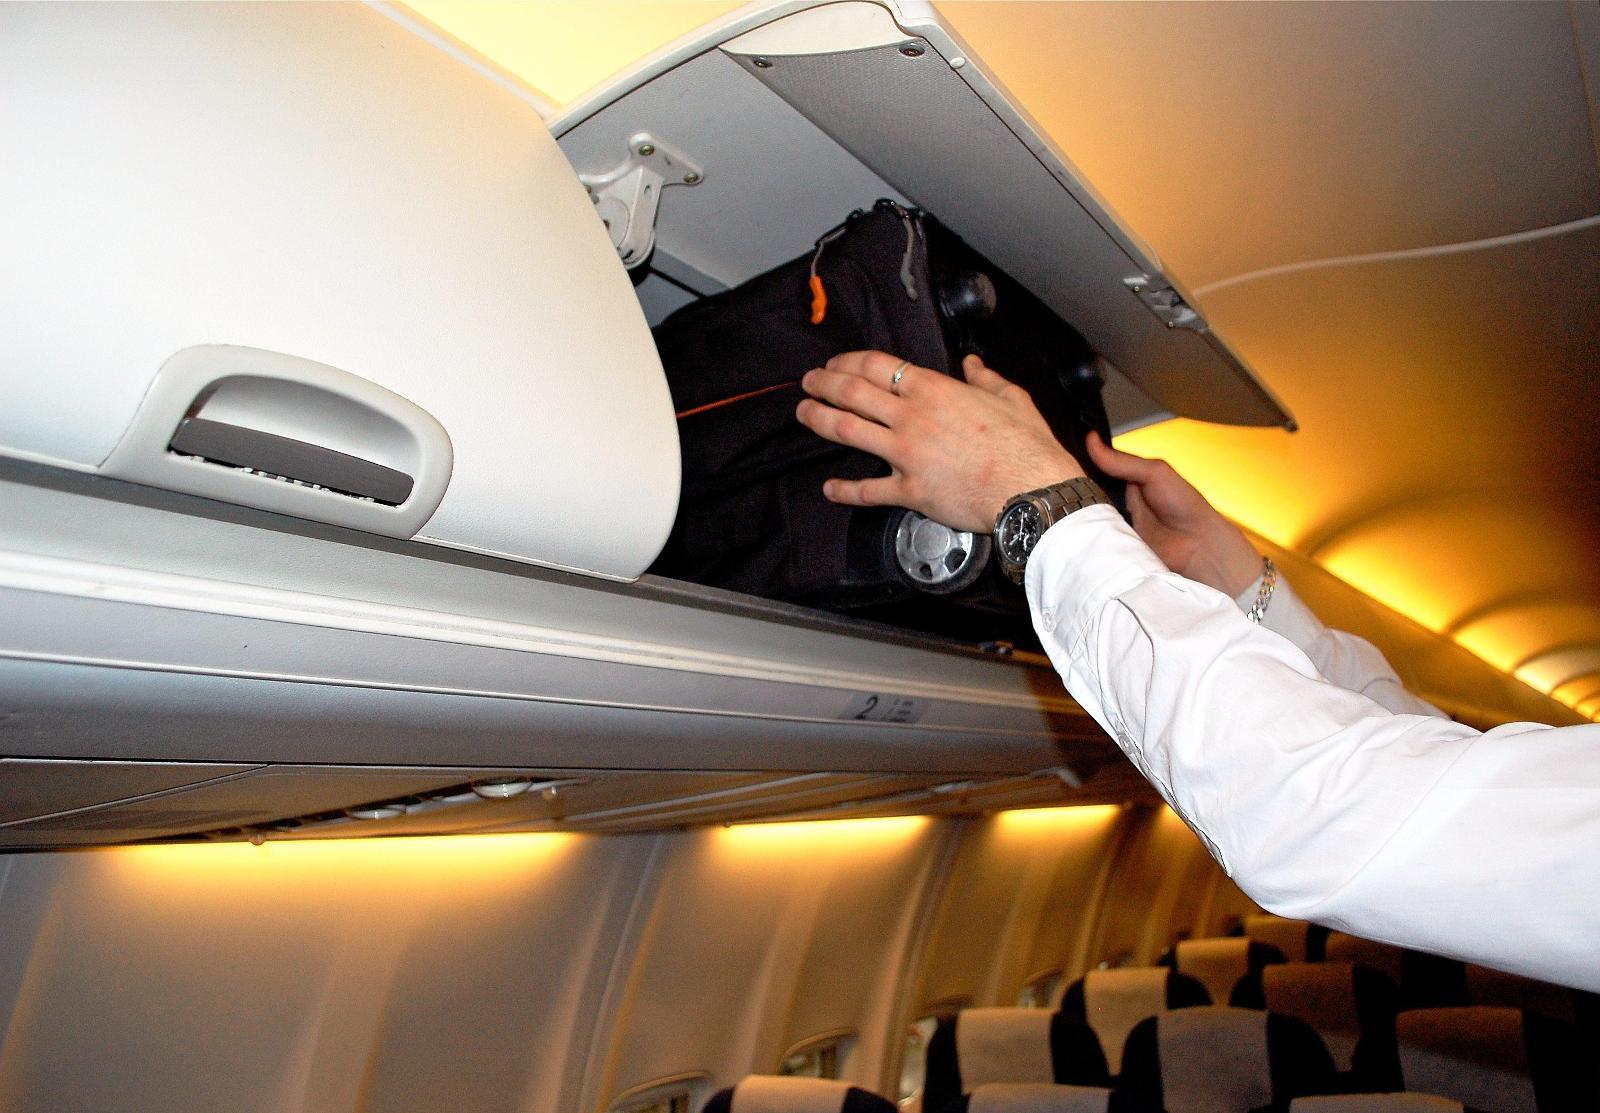 SKAL IKKE LØFTE TUNGT: Tunge kofferter og håndbagasje kan være belastende for kabinpersonalet å håndtere om bord på flyet.